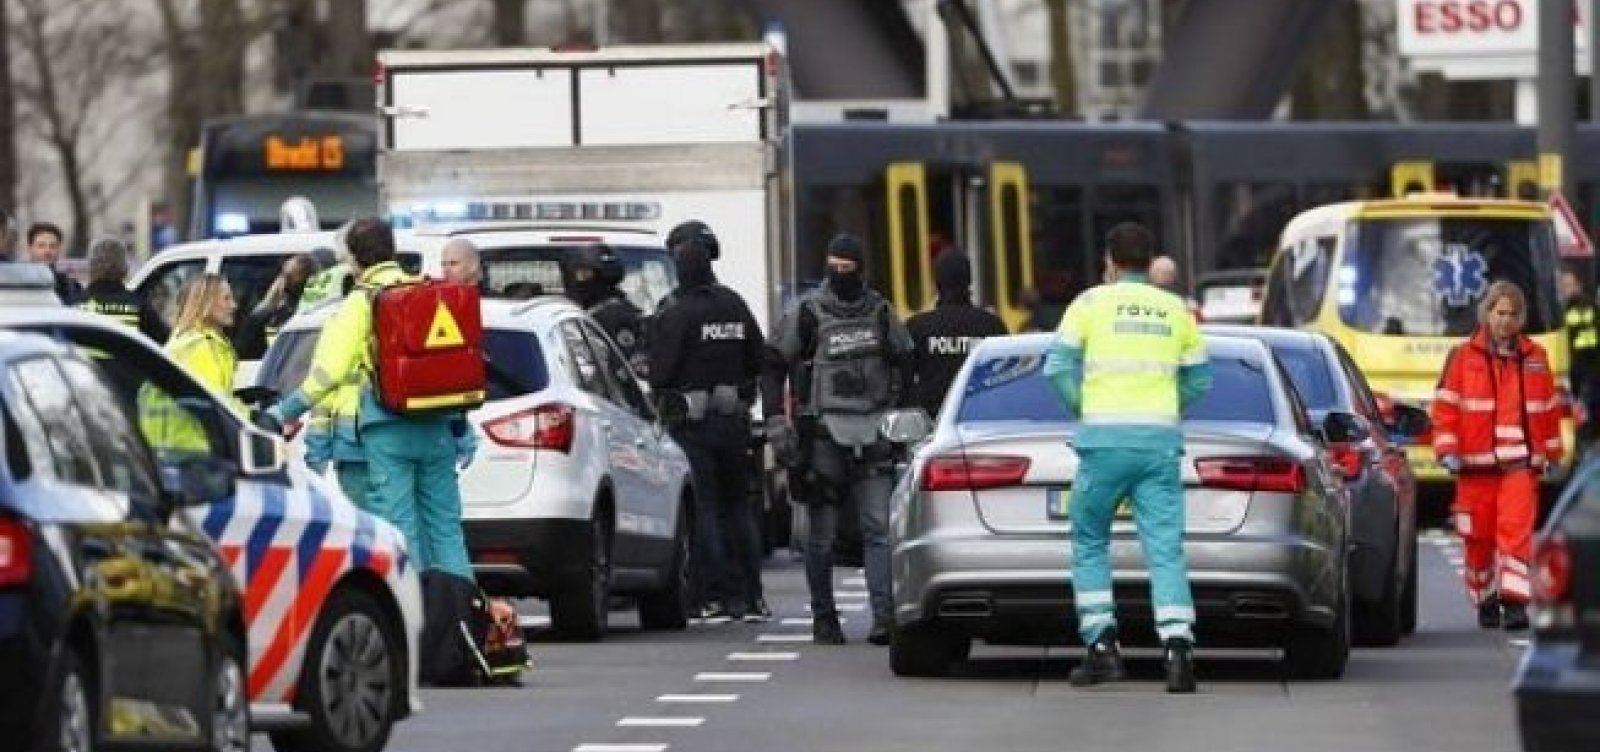 Suspeito de atentado na Holanda se declara culpado, dizem procuradores